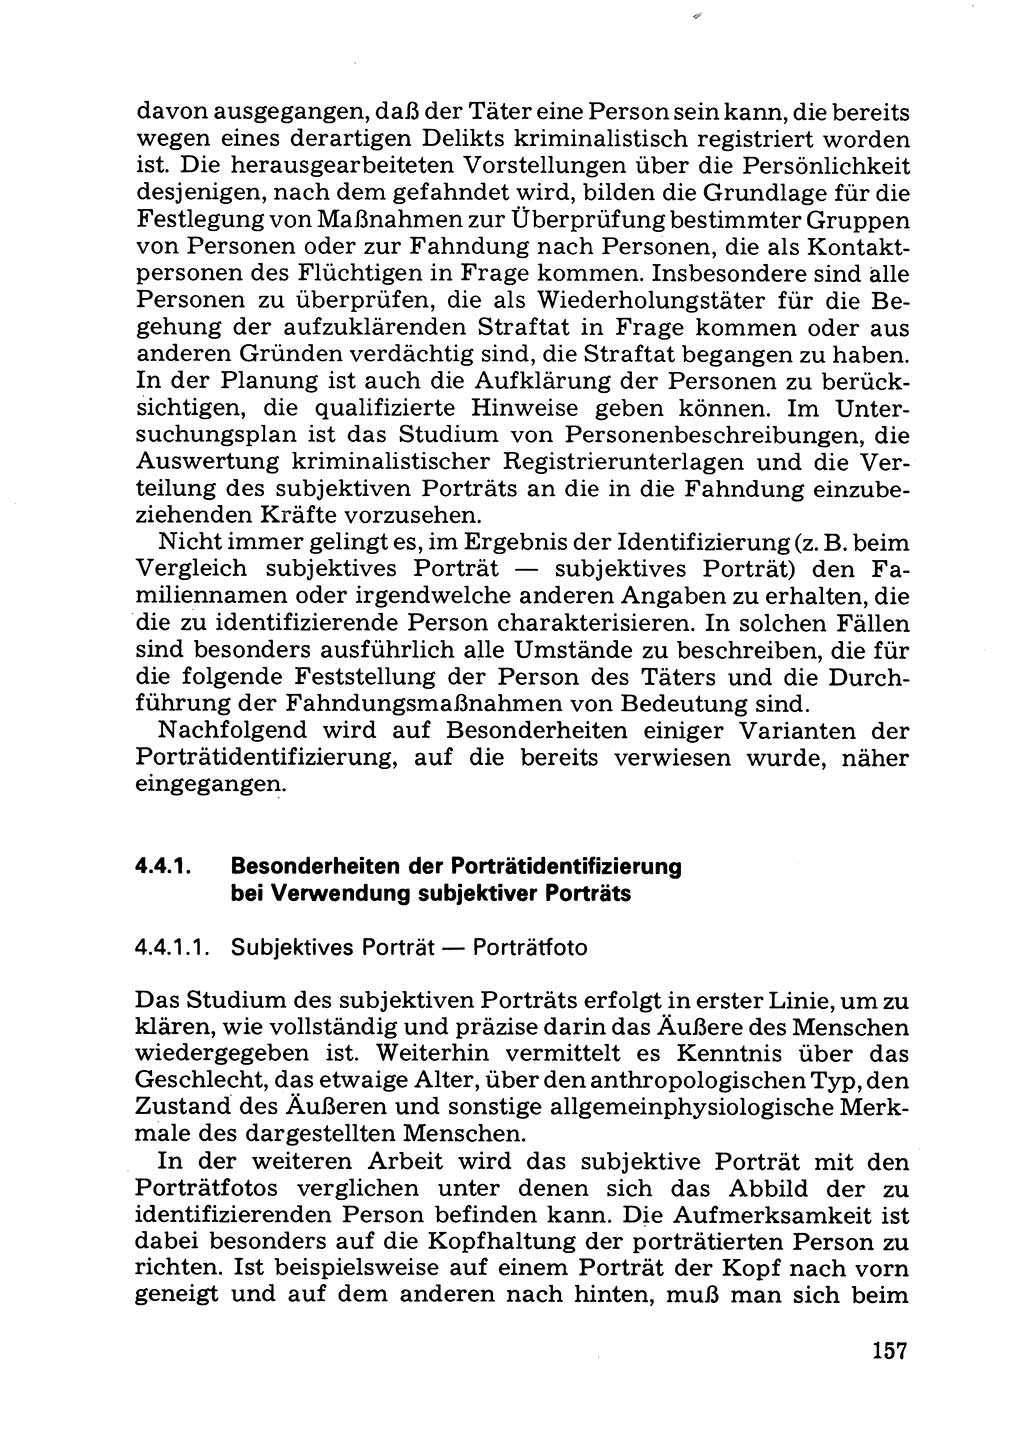 Das subjektive Porträt [Deutsche Demokratische Republik (DDR)] 1981, Seite 157 (Subj. Port. DDR 1981, S. 157)